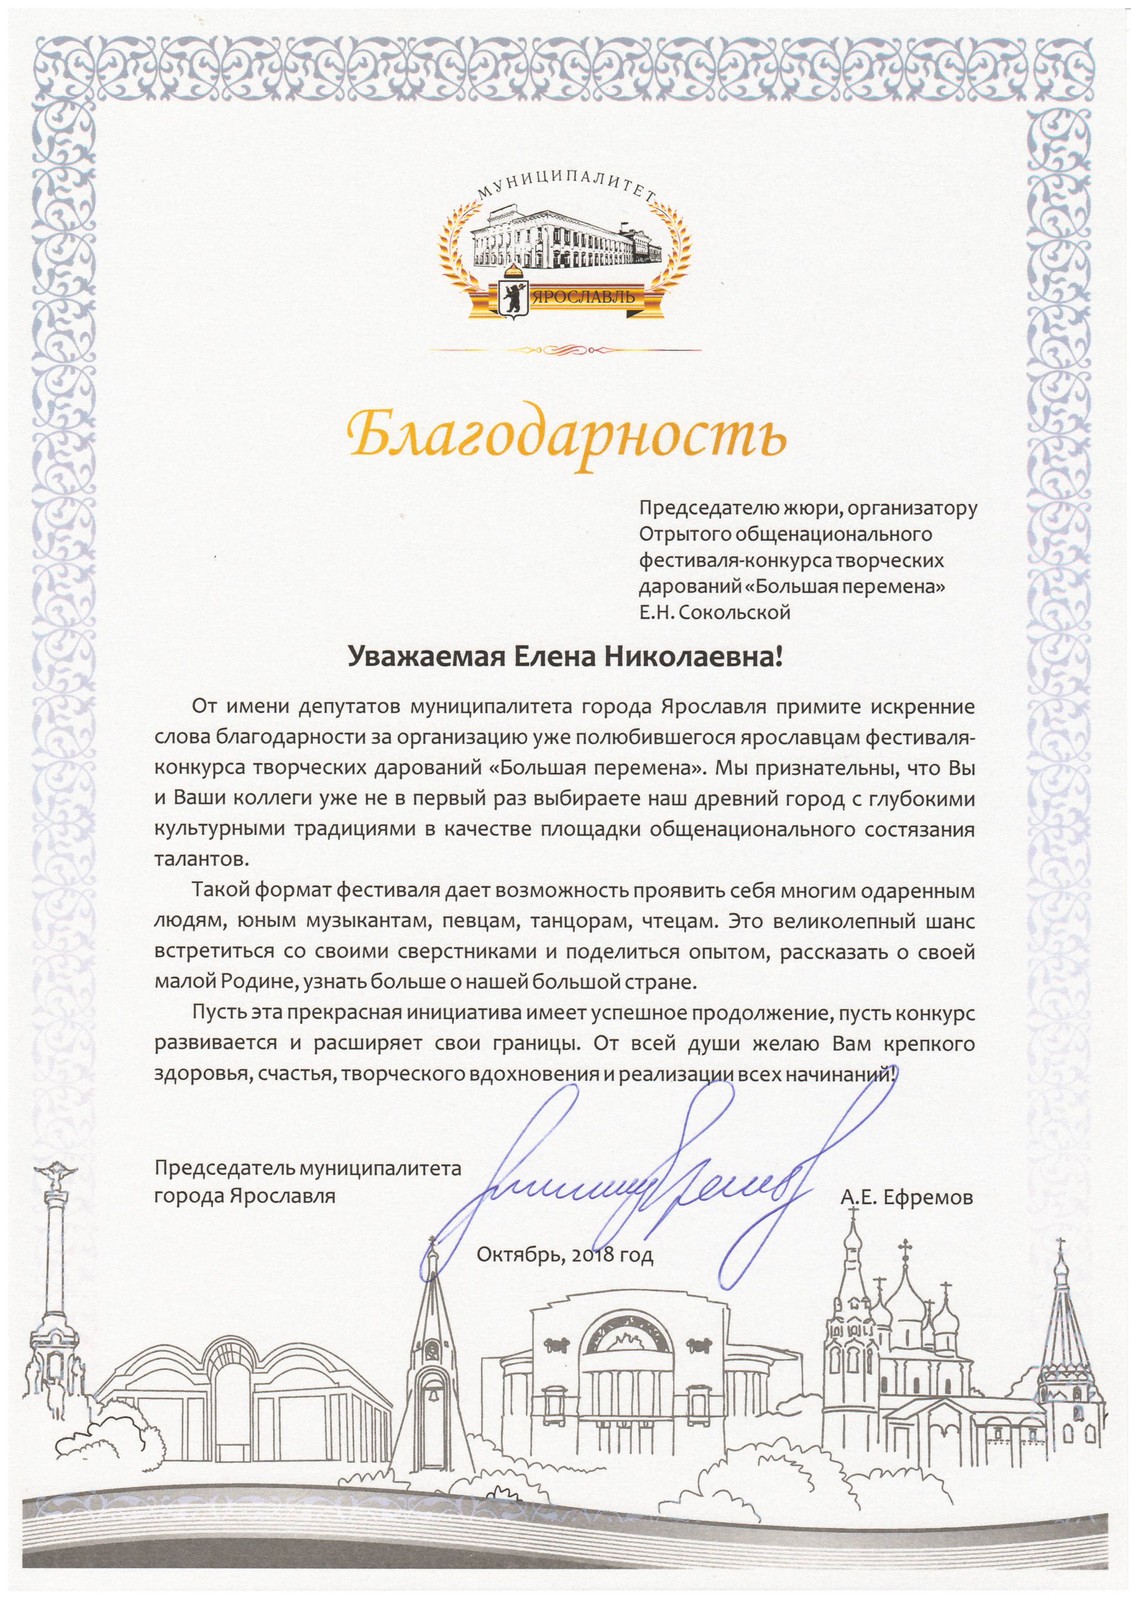 Благодарственное письмо от Председатель муниципалитета Артура Ефремова